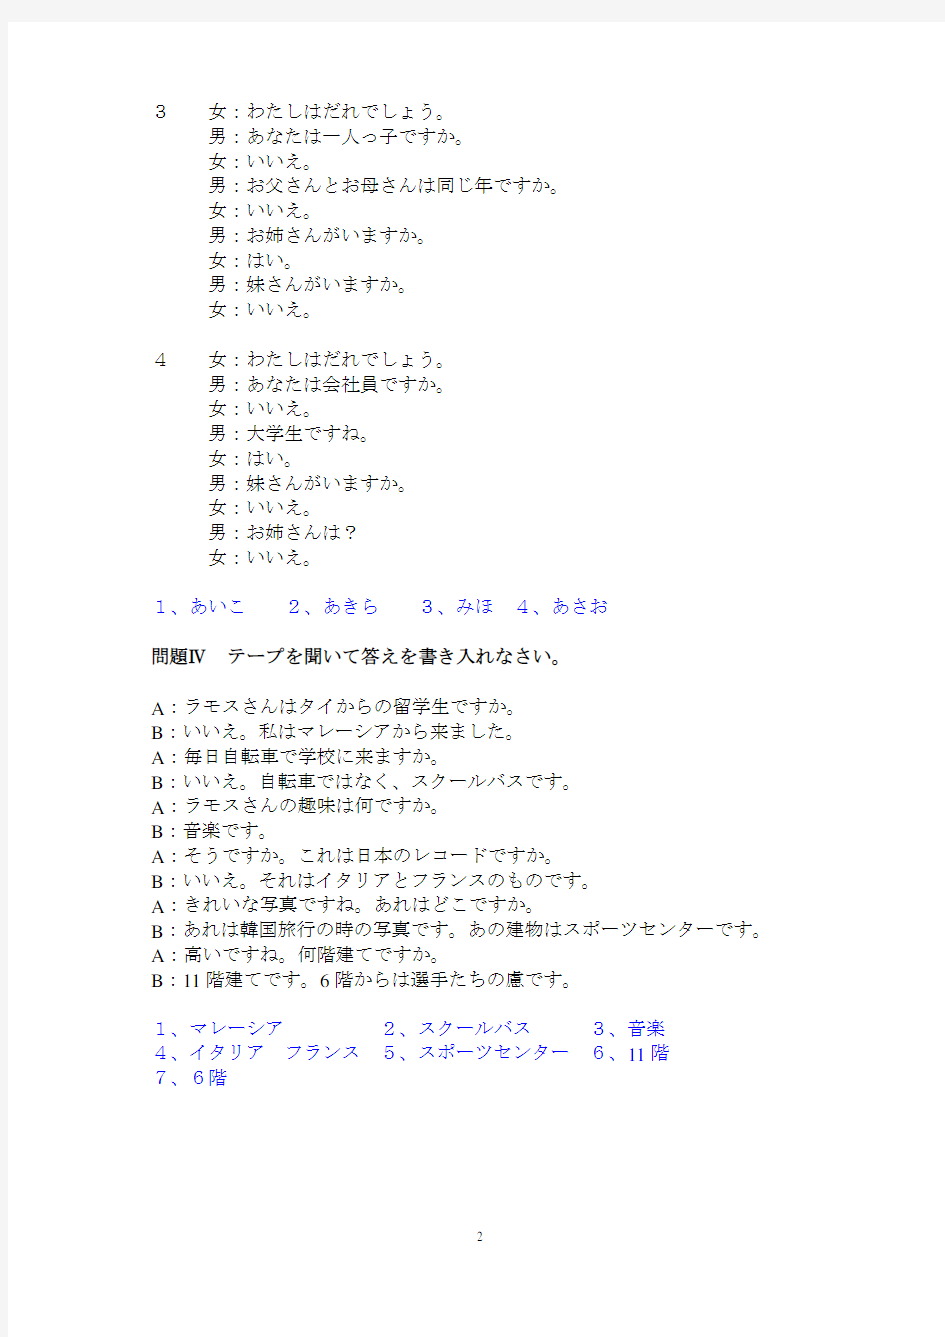 日本语听力 第二版 入门篇 9-12课听力原文及答案